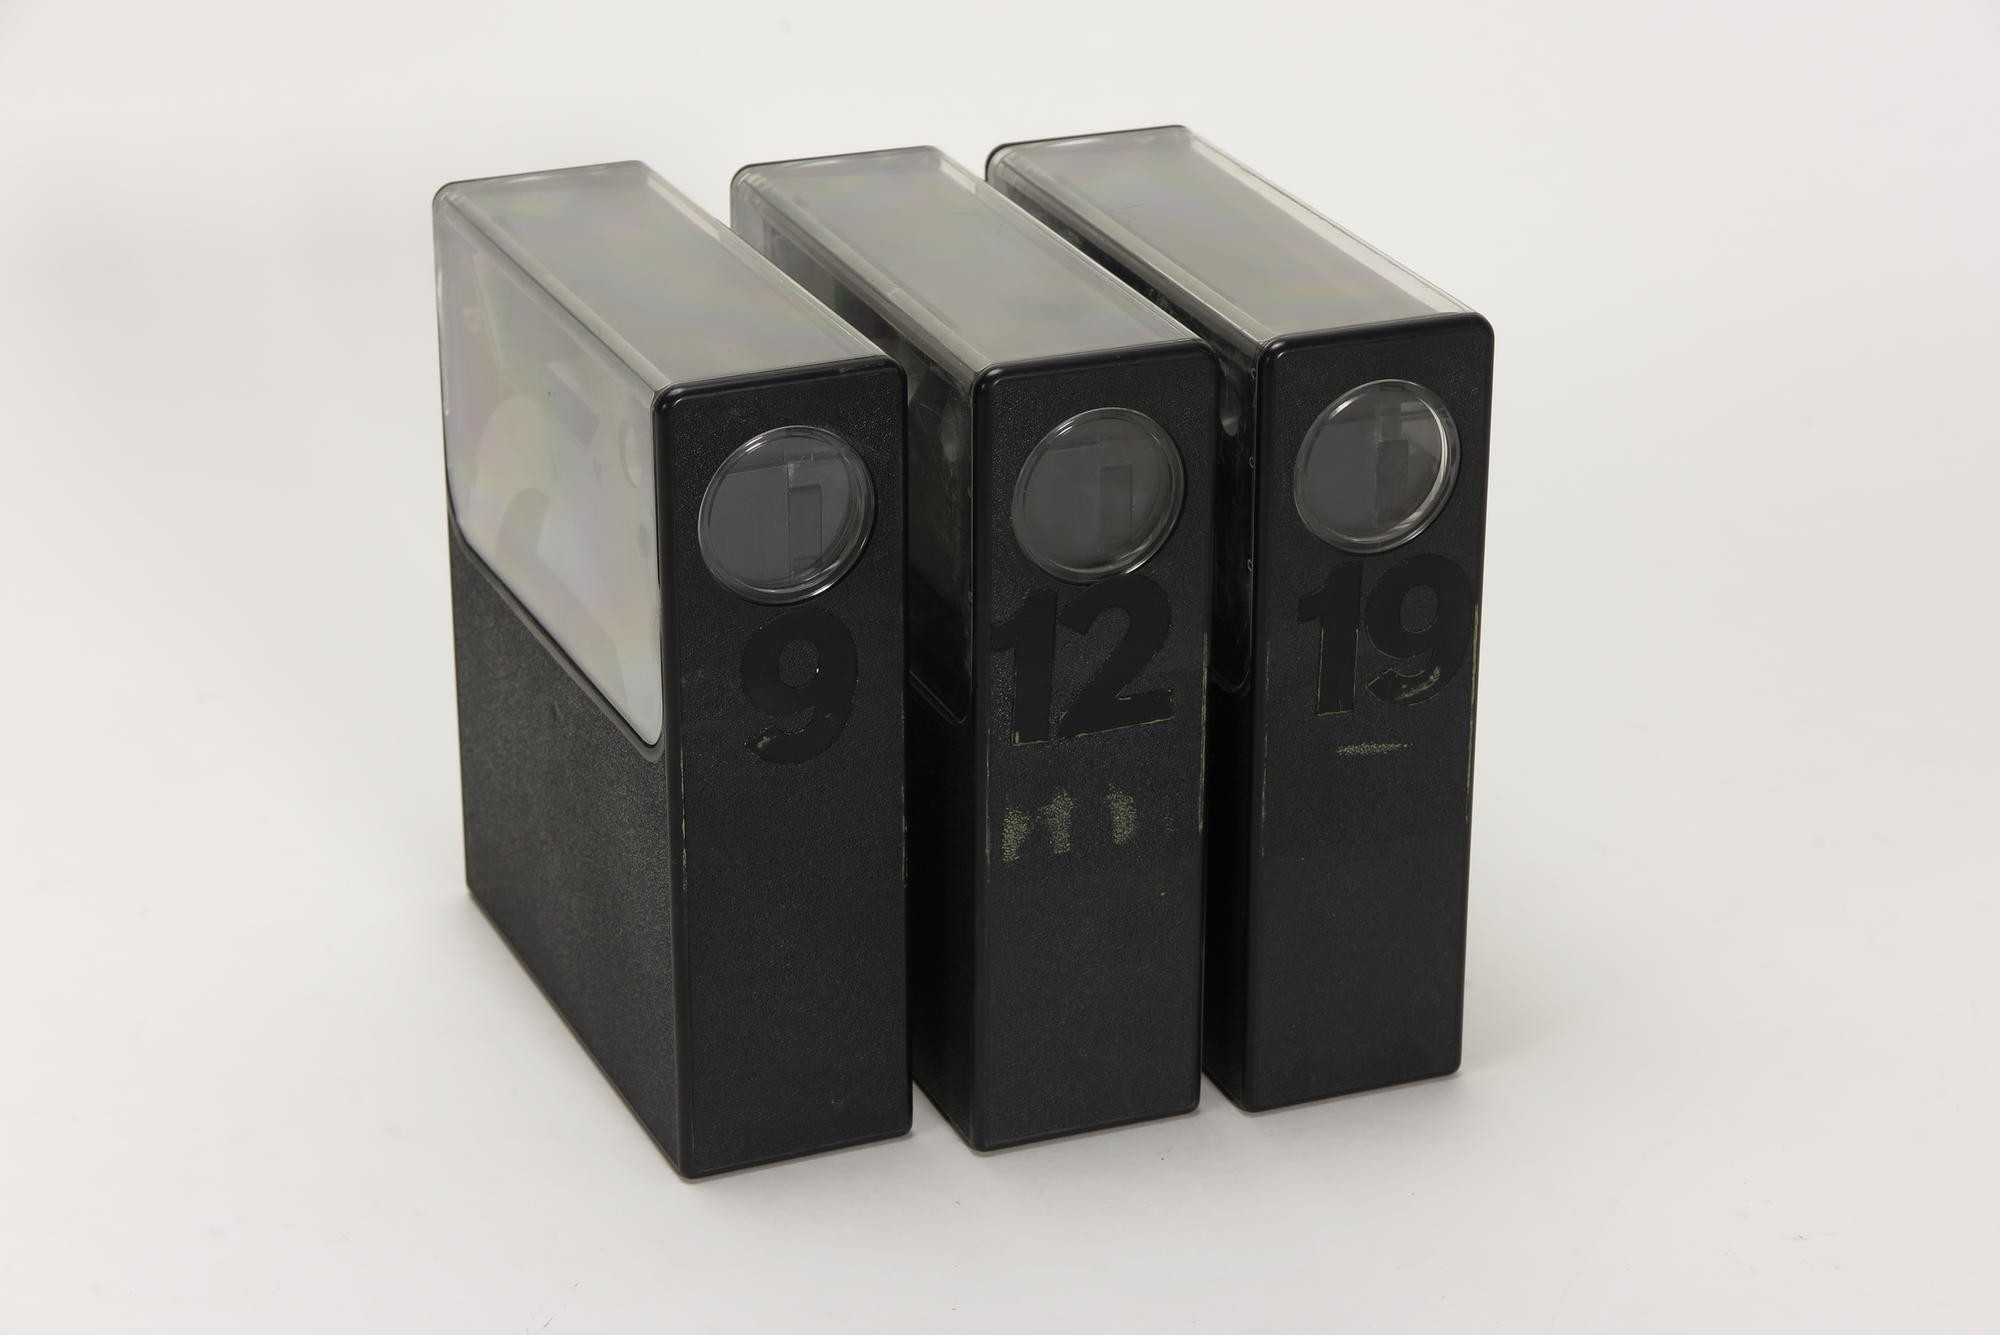 3 x Philips LVC 150 Videokassetten, Zubehör für Videorecorder Telefunken VR 40 (Stiftung Deutsches Technikmuseum Berlin CC0)